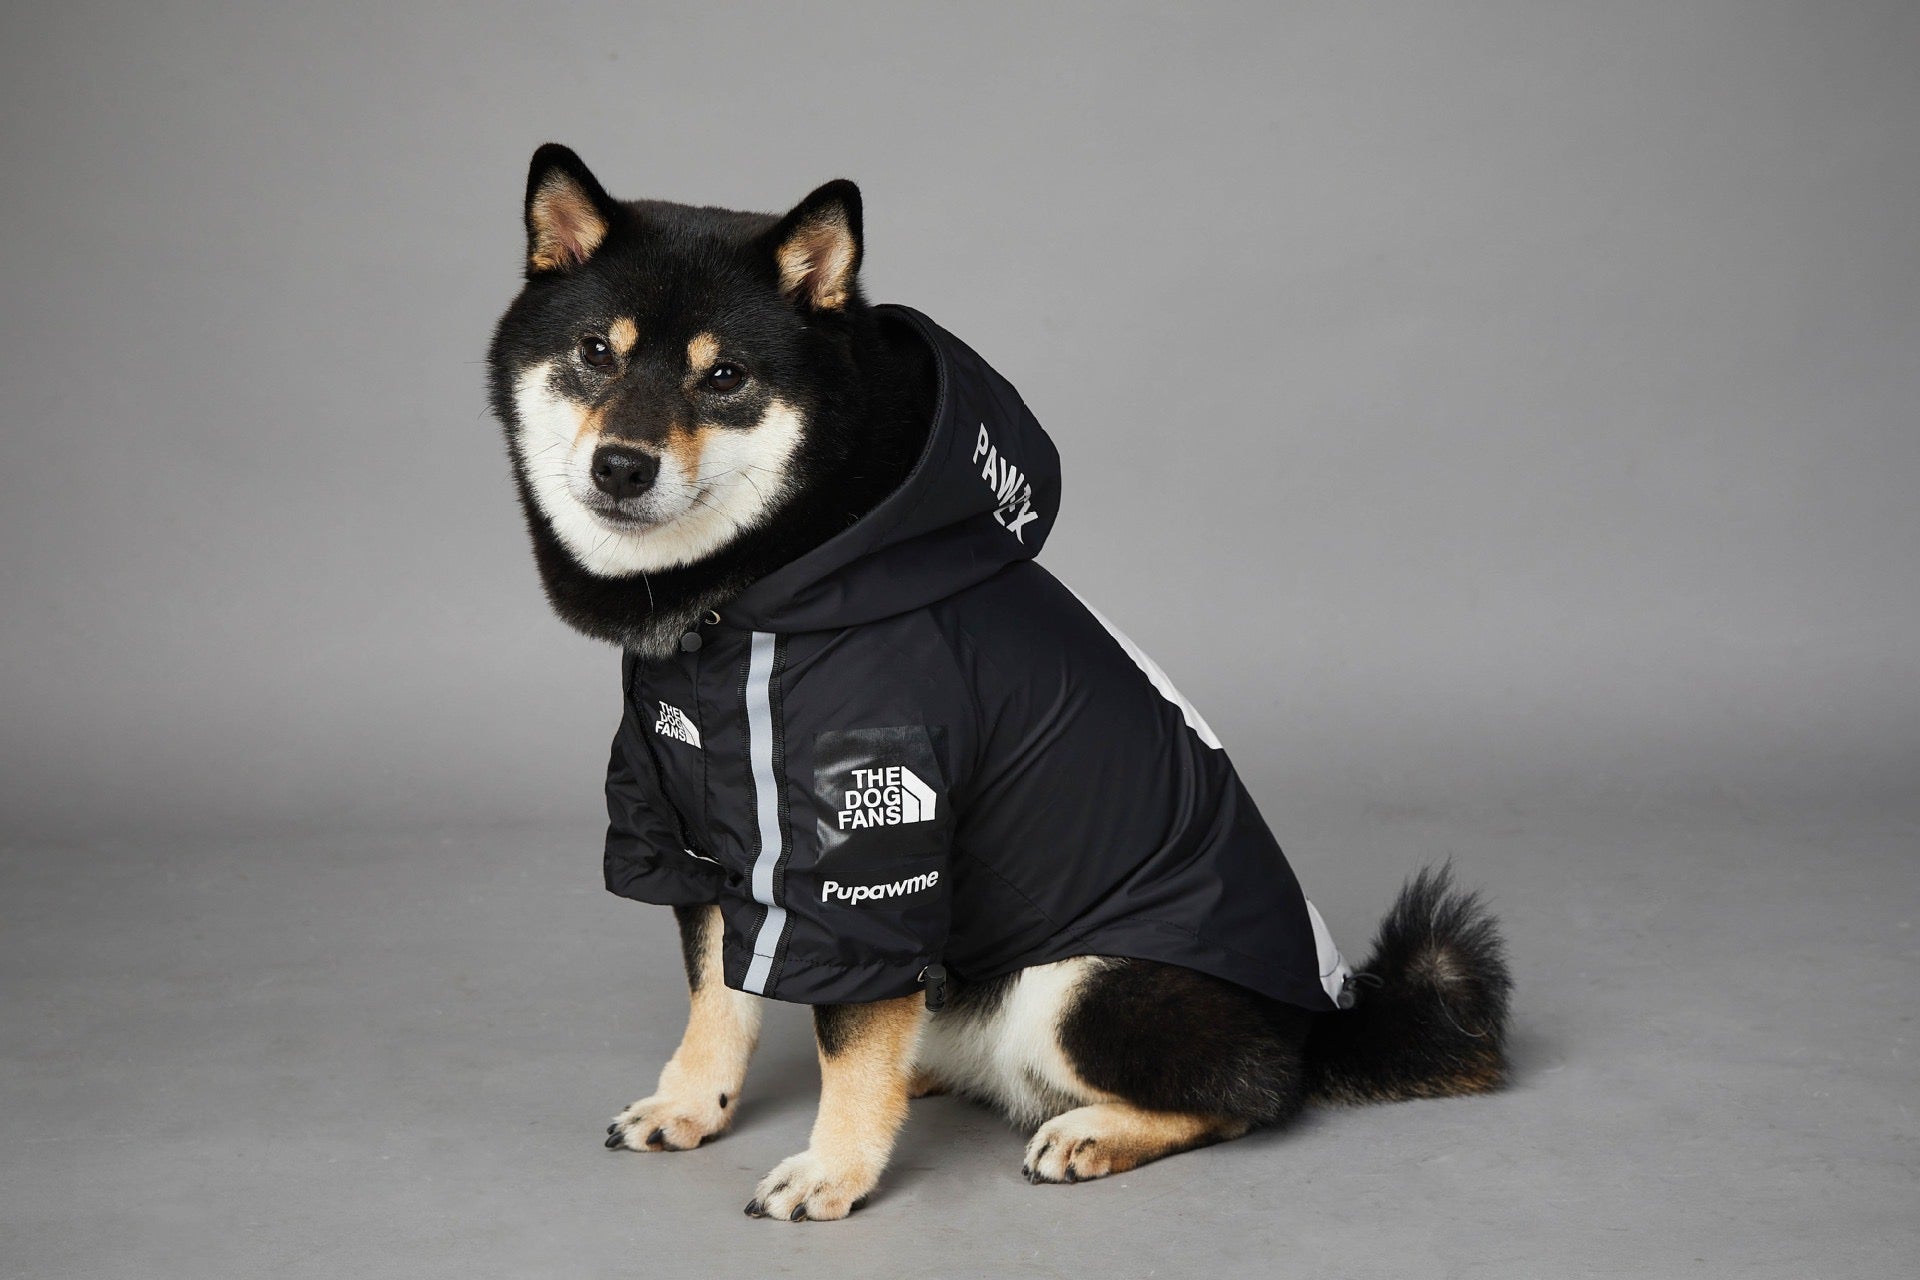 Supawme Dog Rain Jacket